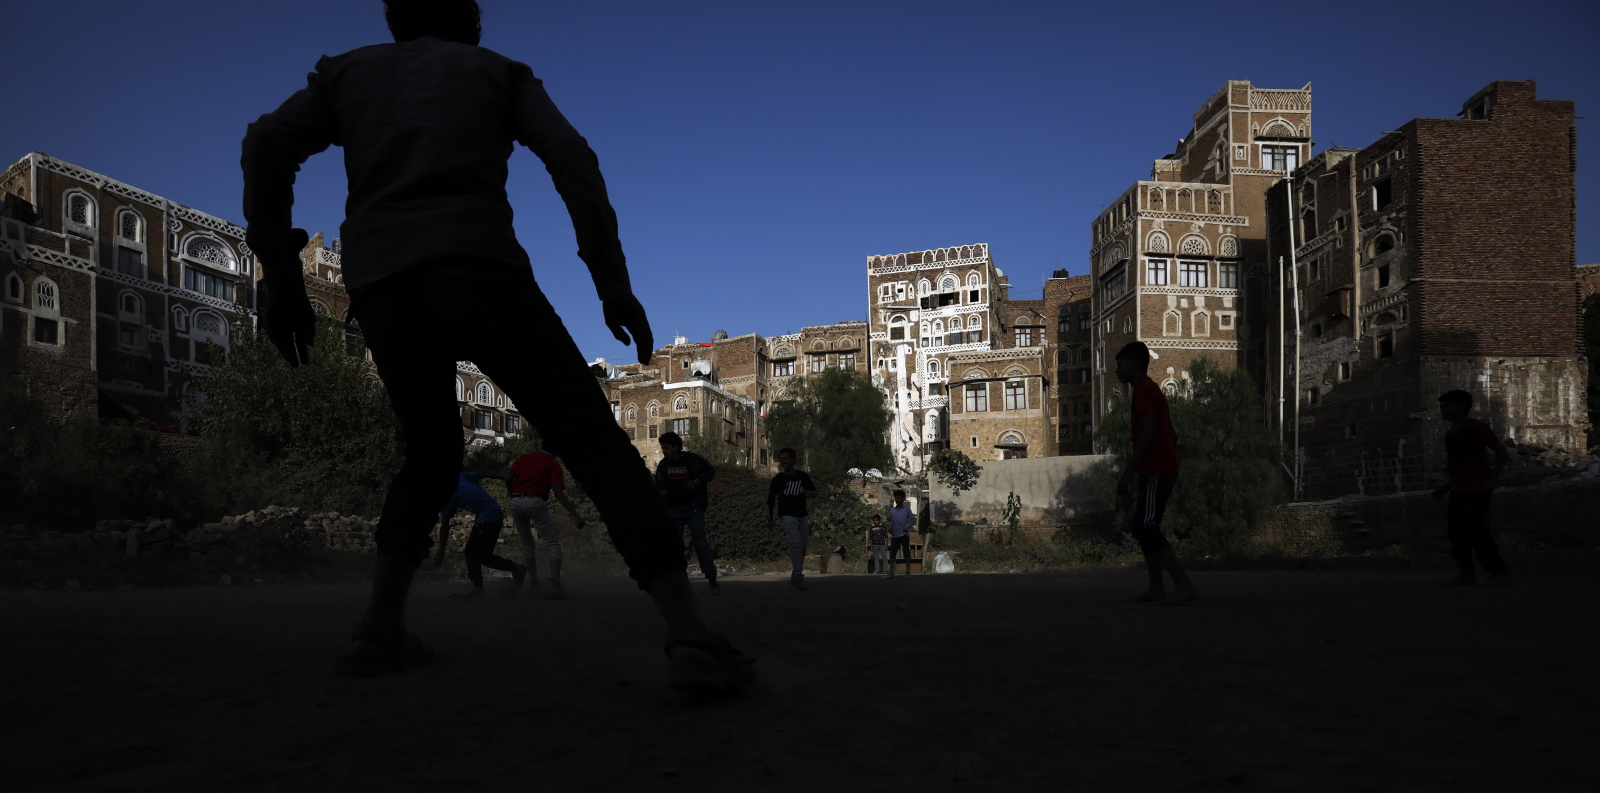 Gry podwórkowe w Sanie, Jemen Fot. PAP/EPA/YAHYA ARHAB